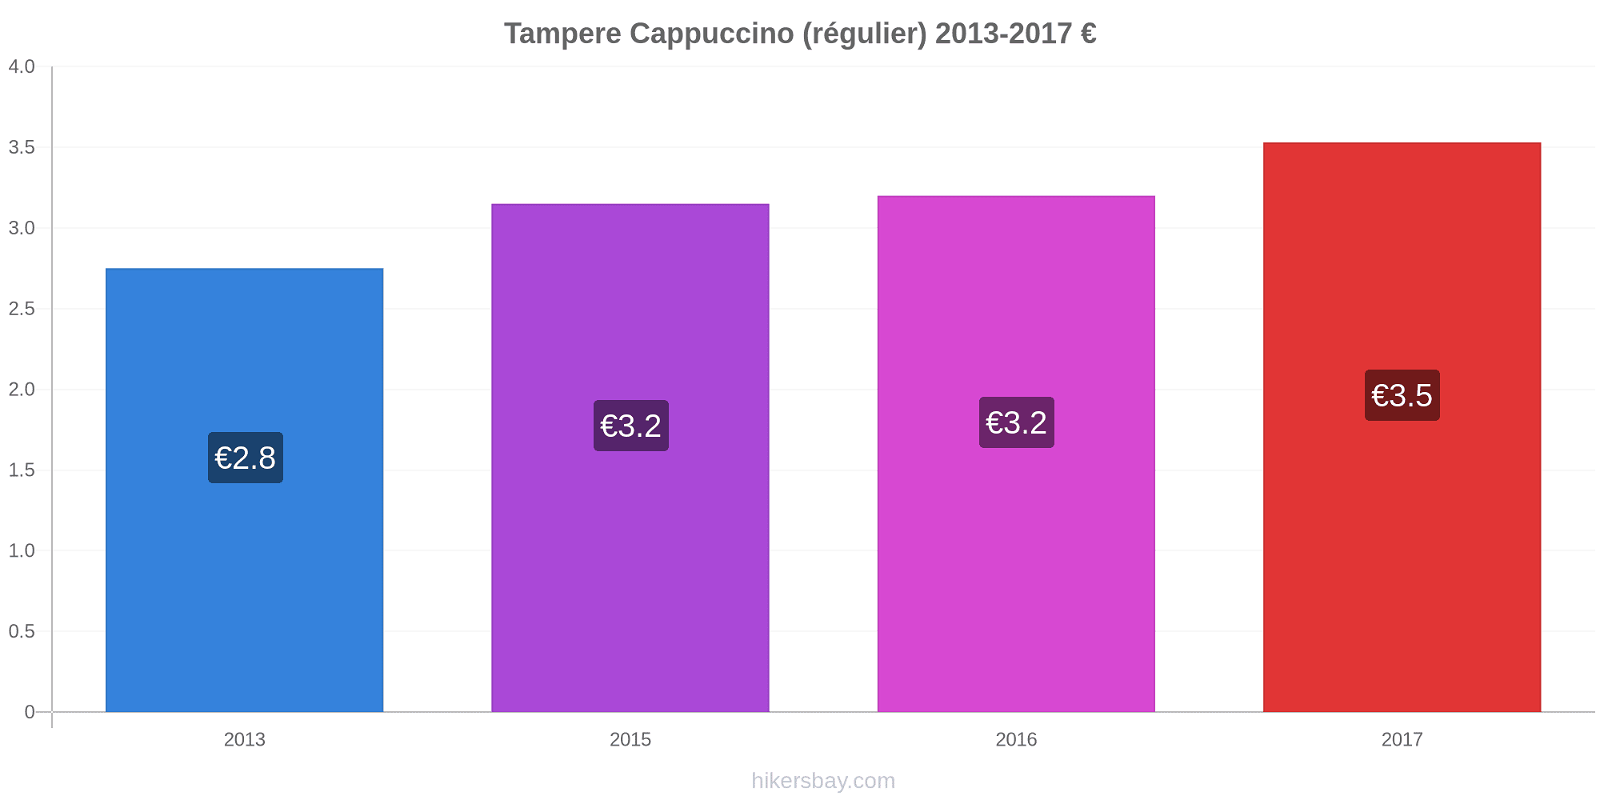 Tampere changements de prix Cappuccino (régulier) hikersbay.com